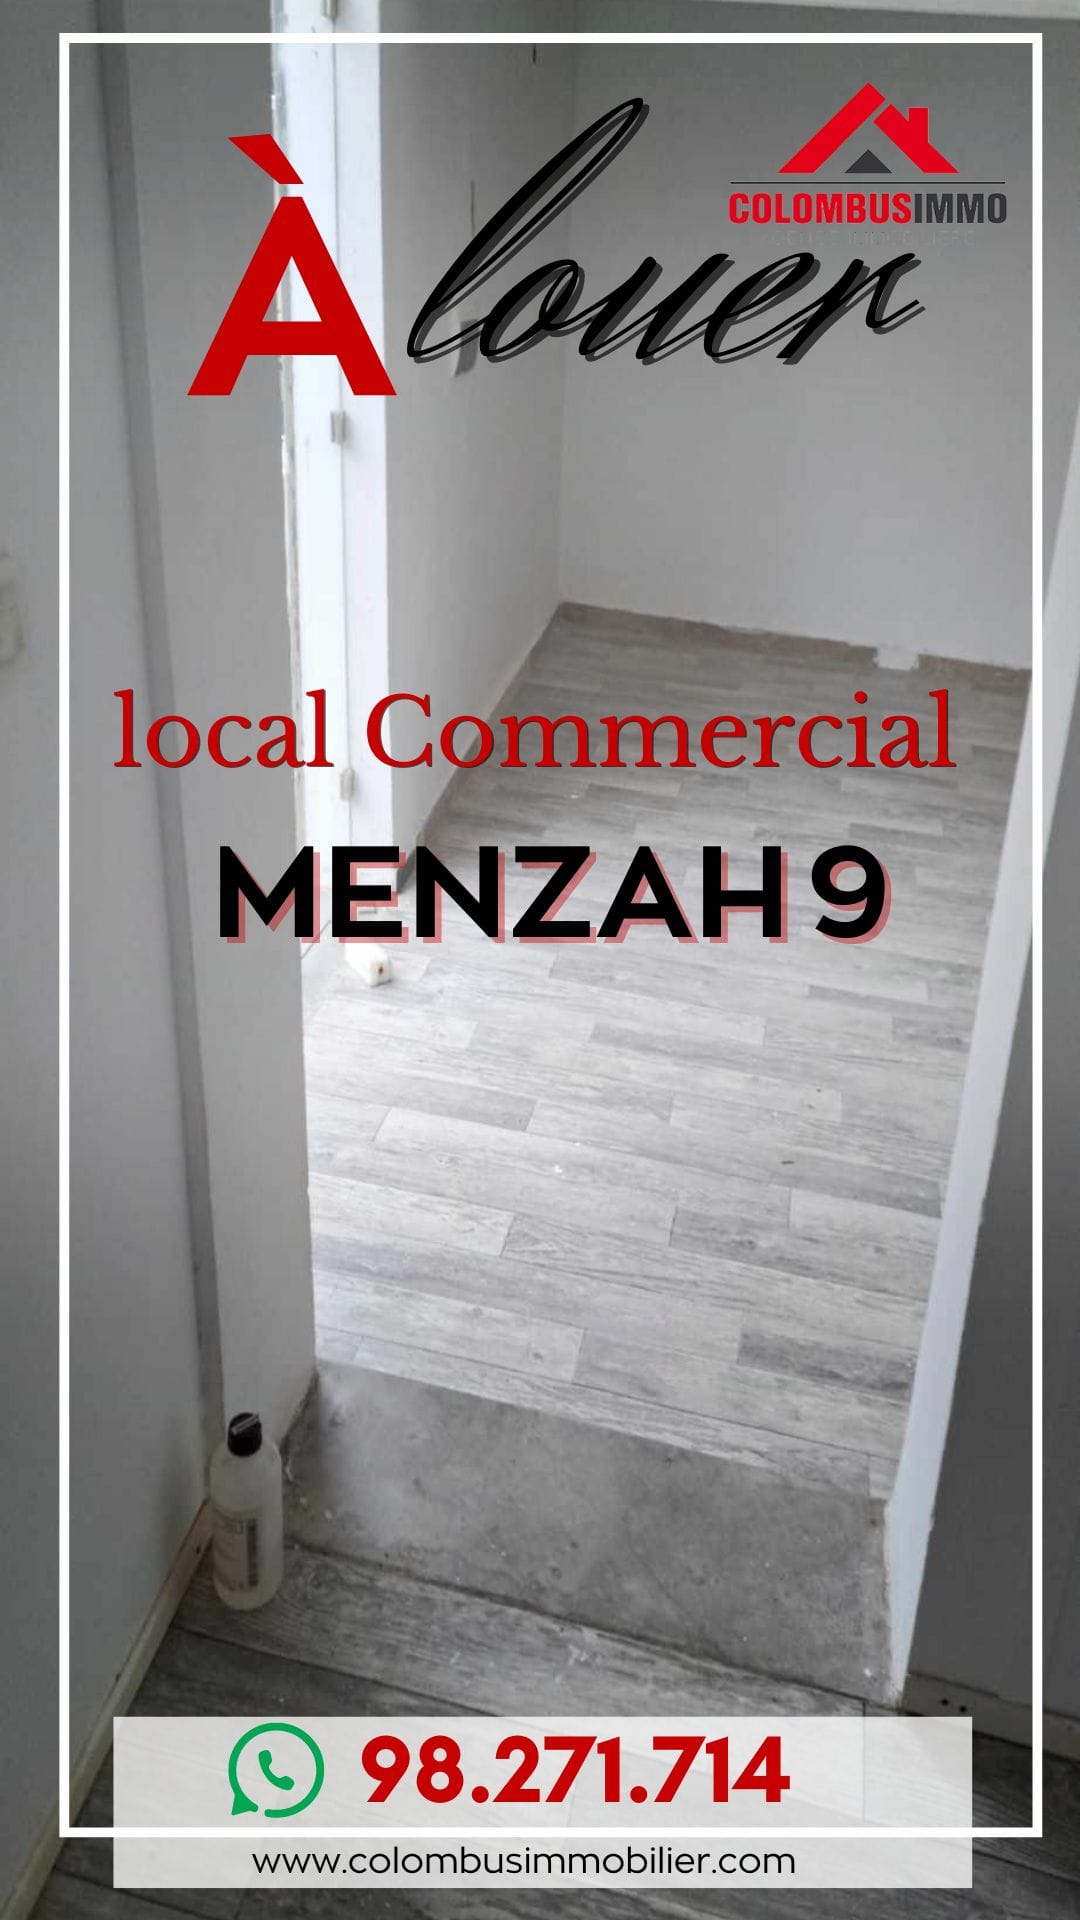 El Menzah El Menzah 9 Bureaux & Commerces Autre Local commercial  menzah9